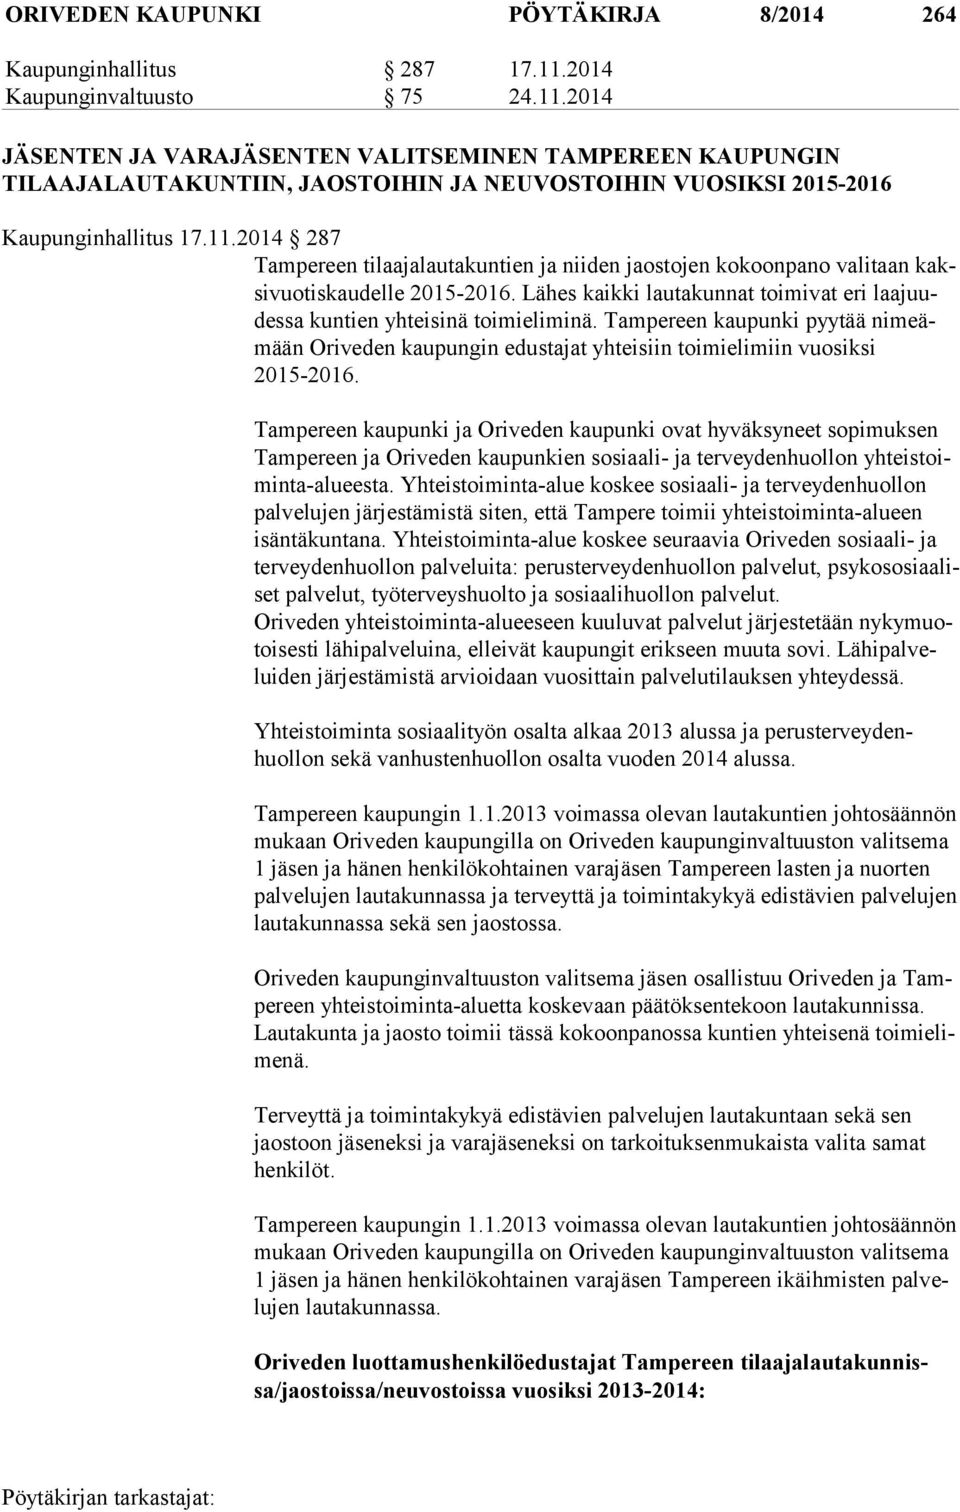 Lähes kaikki lautakunnat toimivat eri laa juudes sa kuntien yhteisinä toimieliminä. Tampereen kaupunki pyytää ni meämään Oriveden kaupungin edustajat yhteisiin toimielimiin vuosiksi 2015-2016.